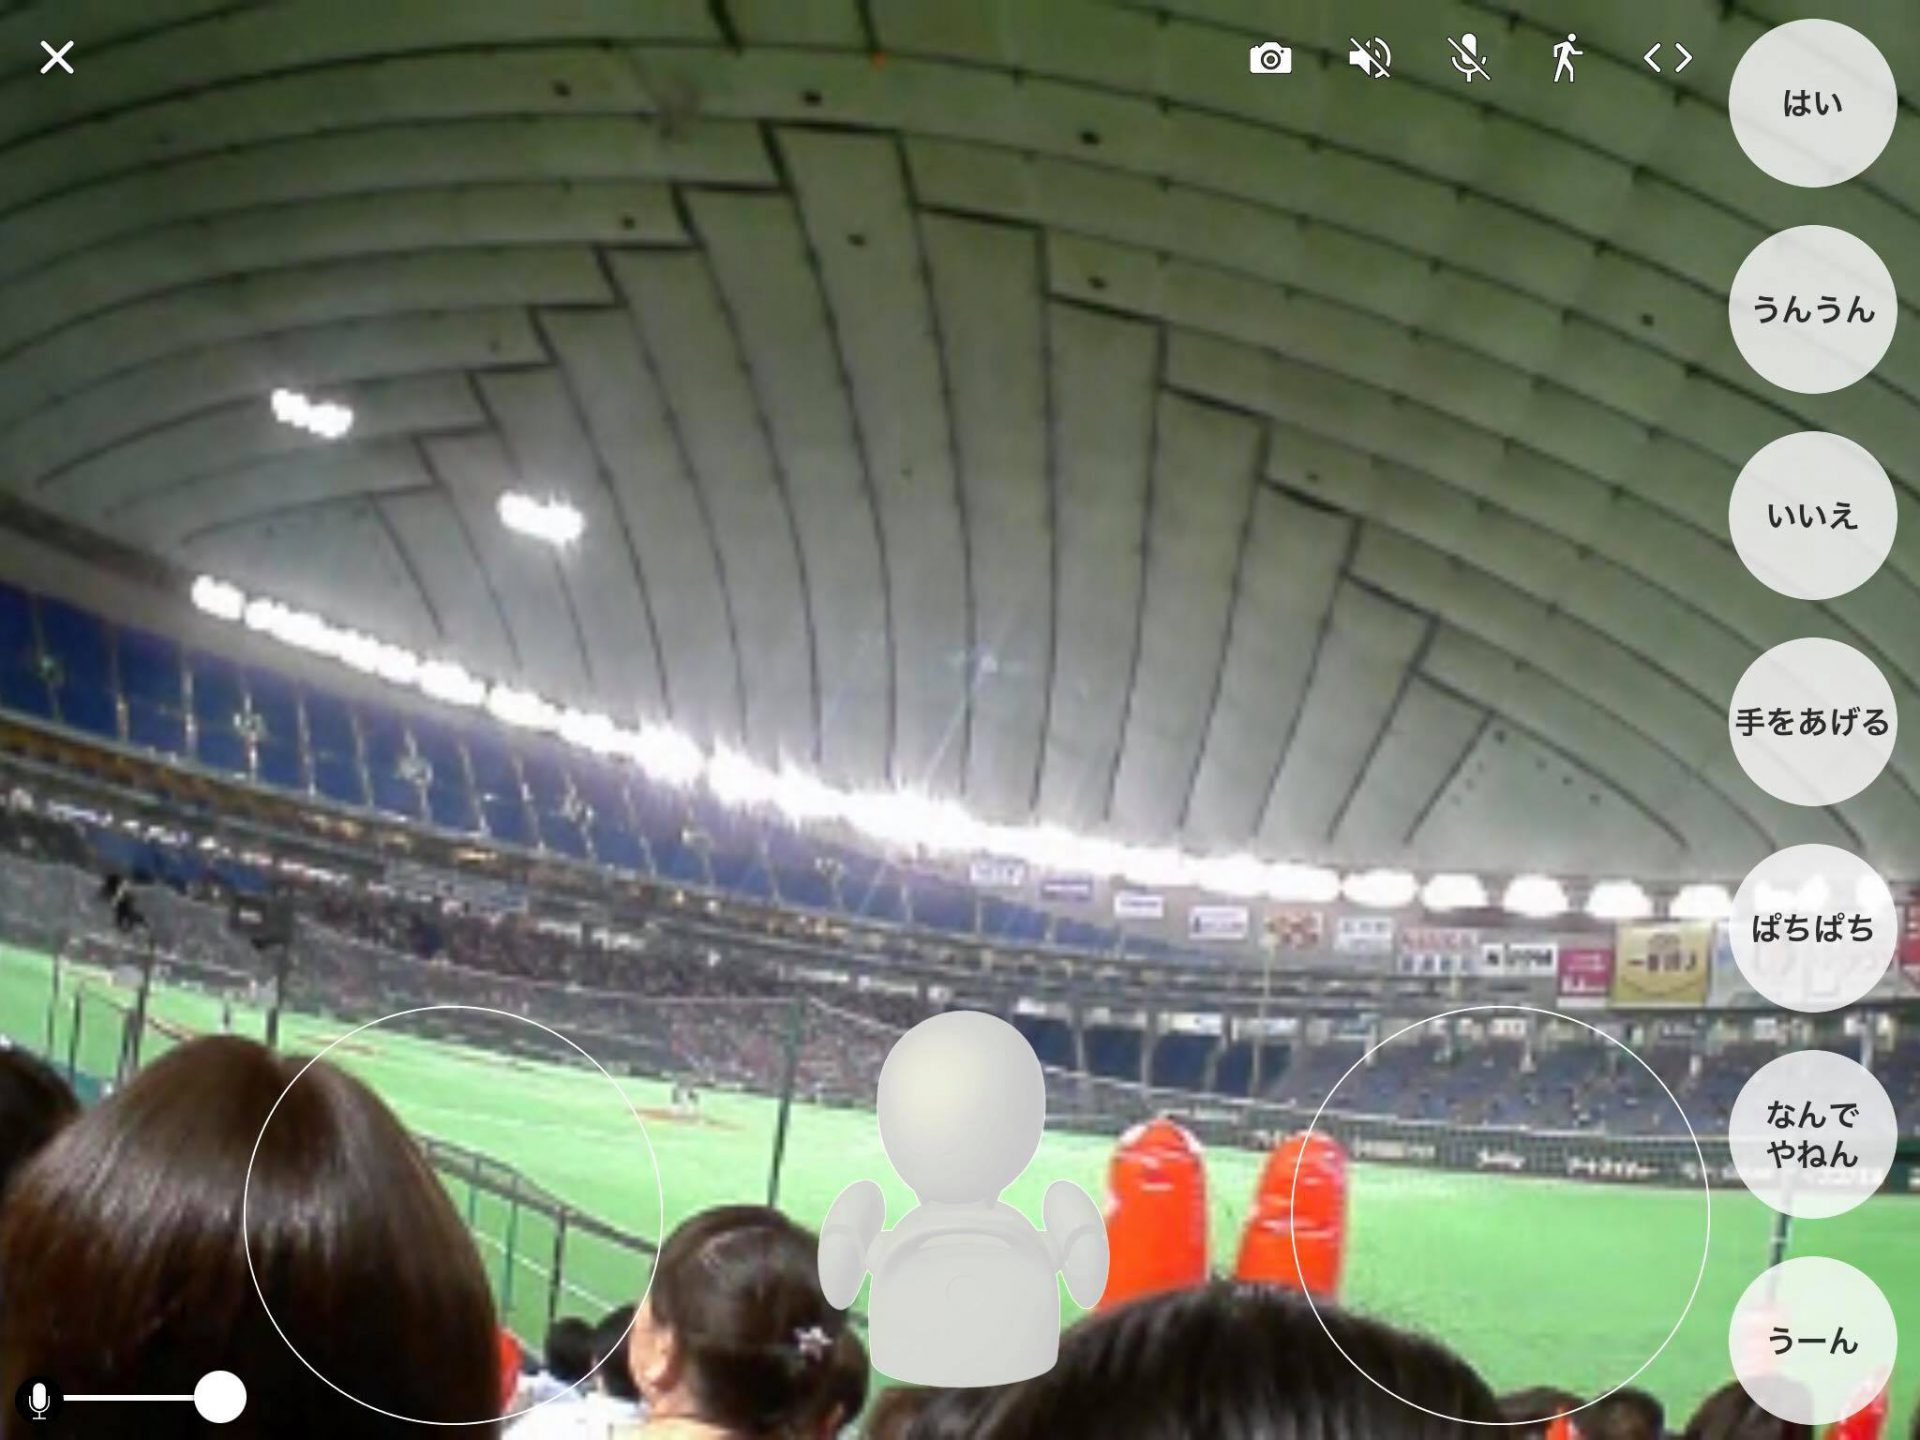 Orihimeでスポーツ観戦 東京ドームで都市対抗野球の応援をしてきました The Avatar World 分身ロボットのあるくらし